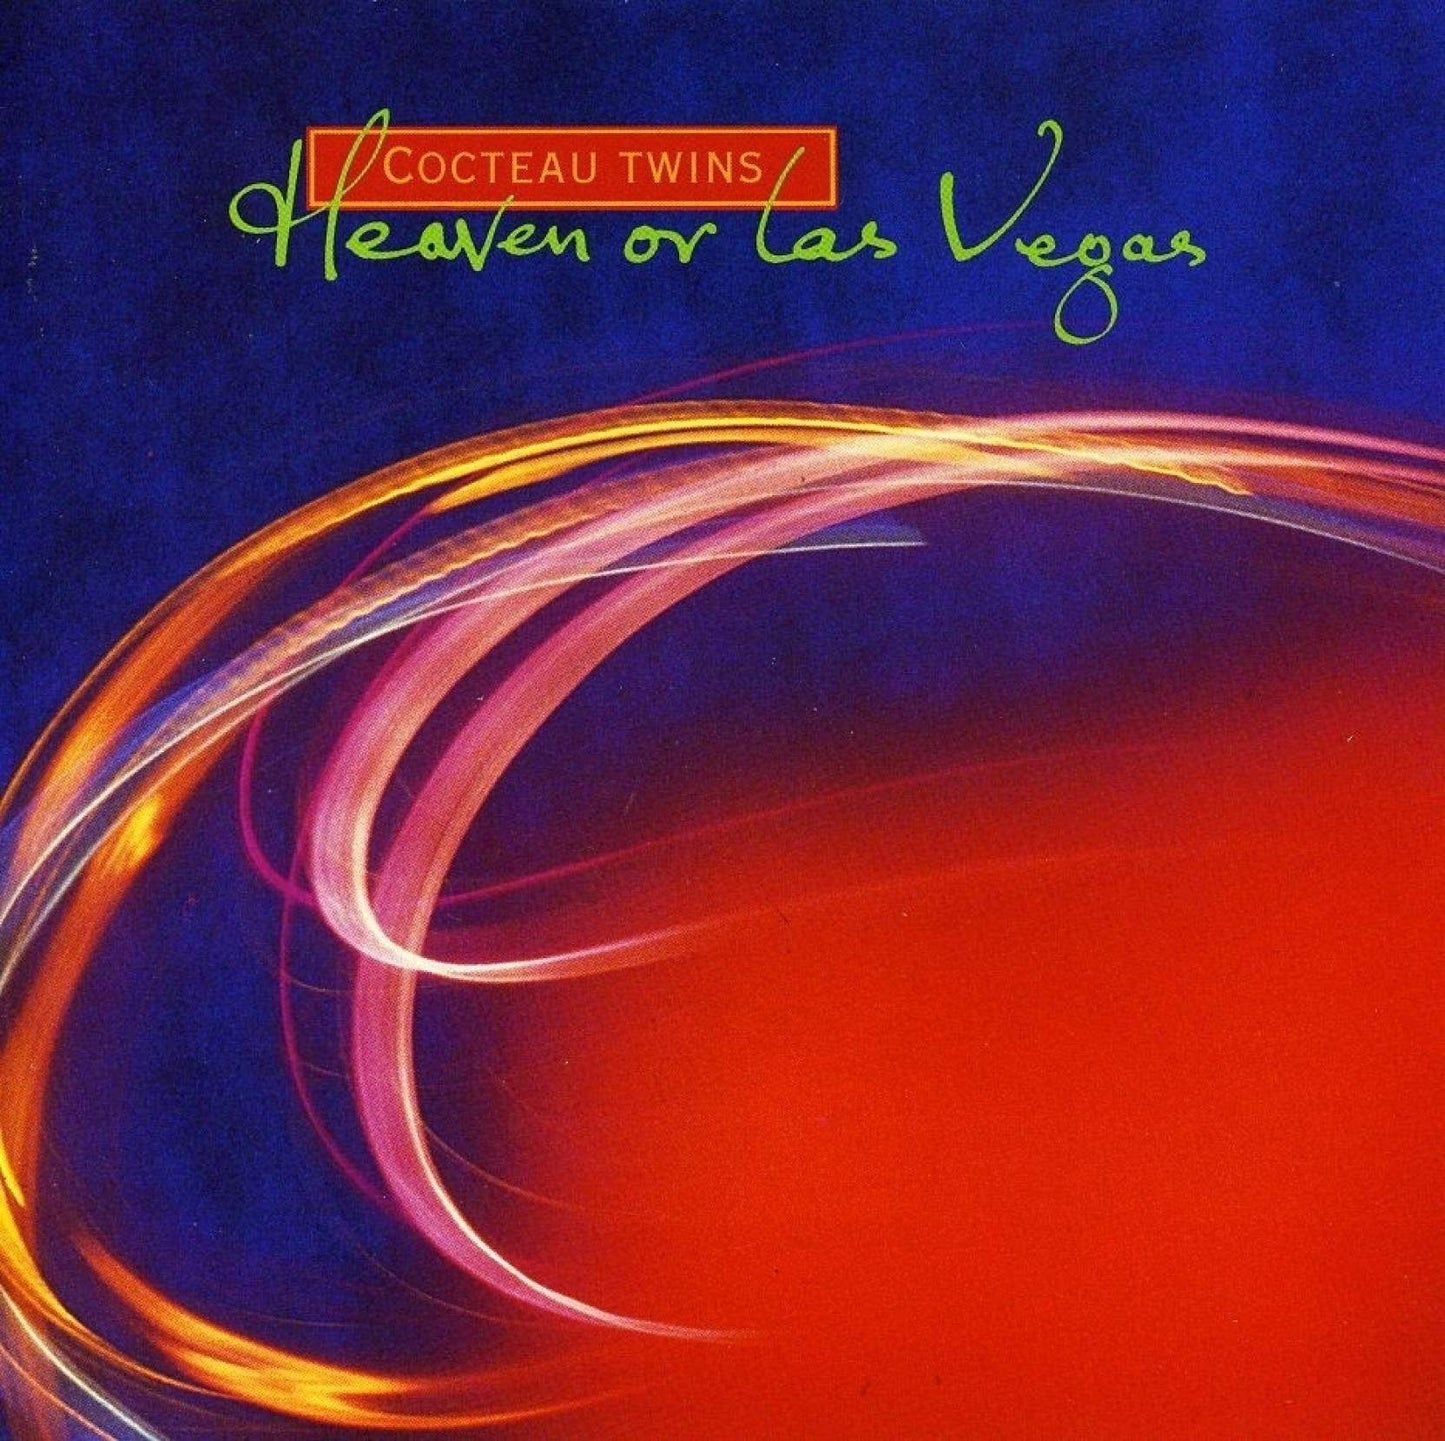 Cocteau Twins 'Heaven Or Las Vegas' LP